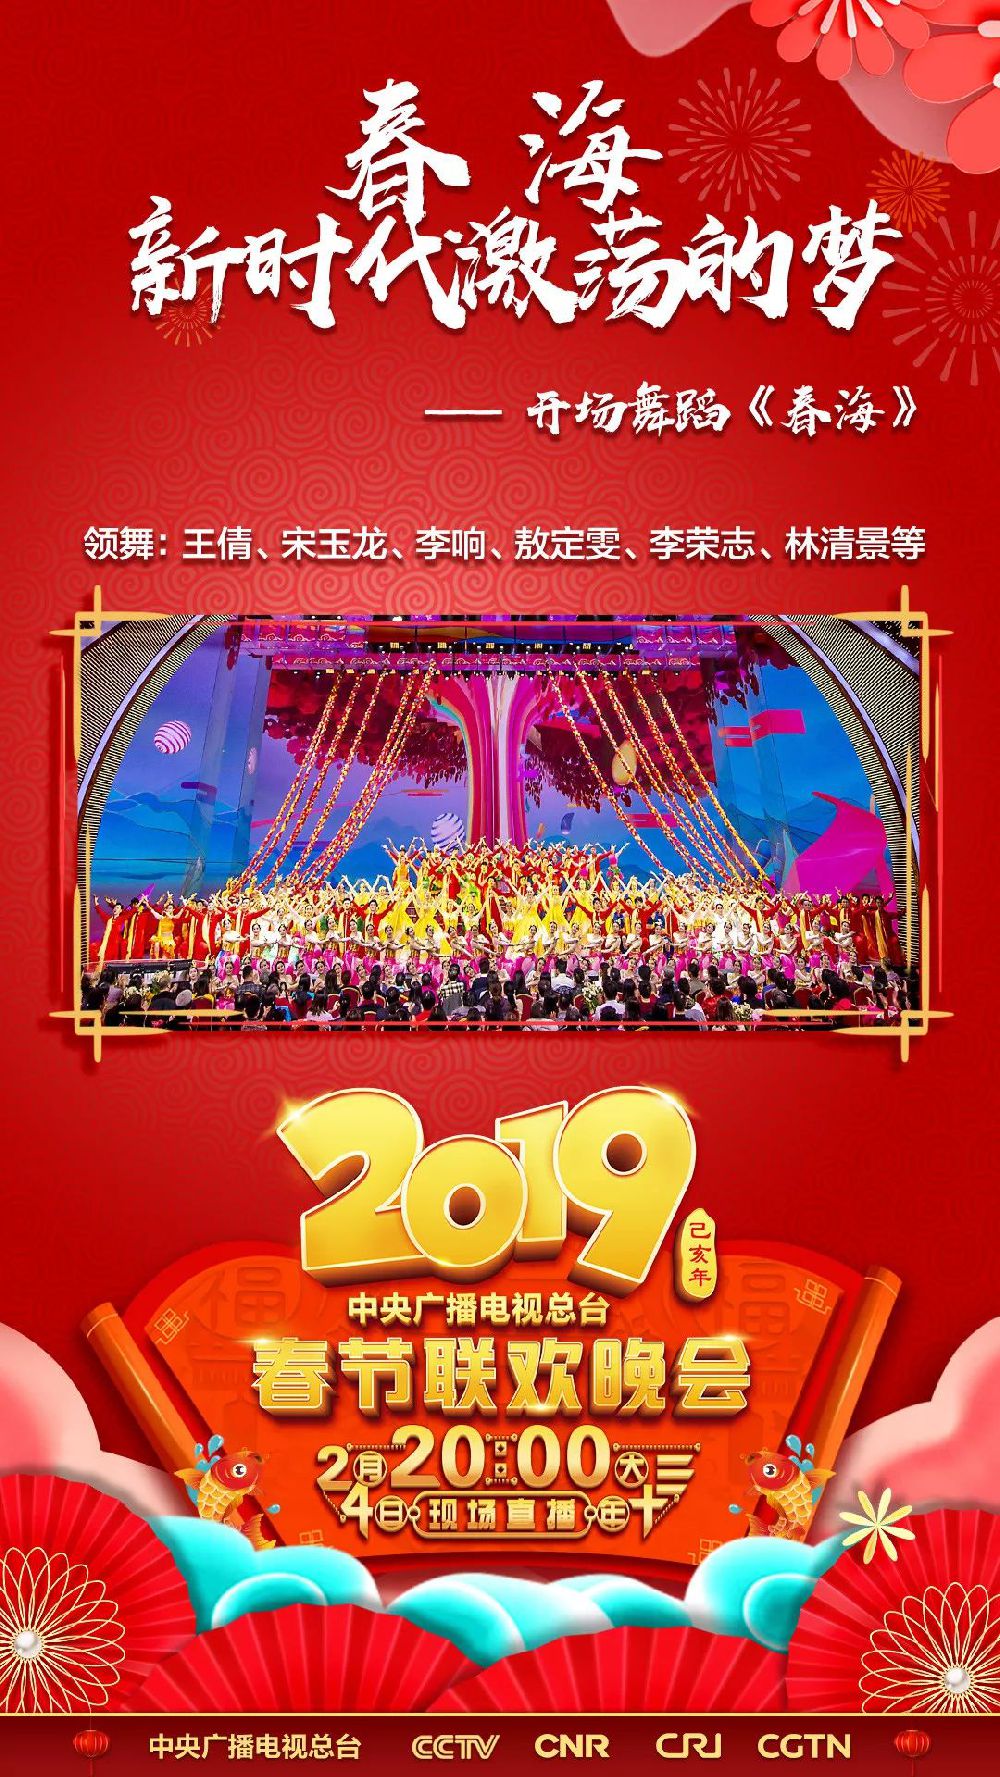 2019猪年央视春晚阵容公布 嘉宾名单一览